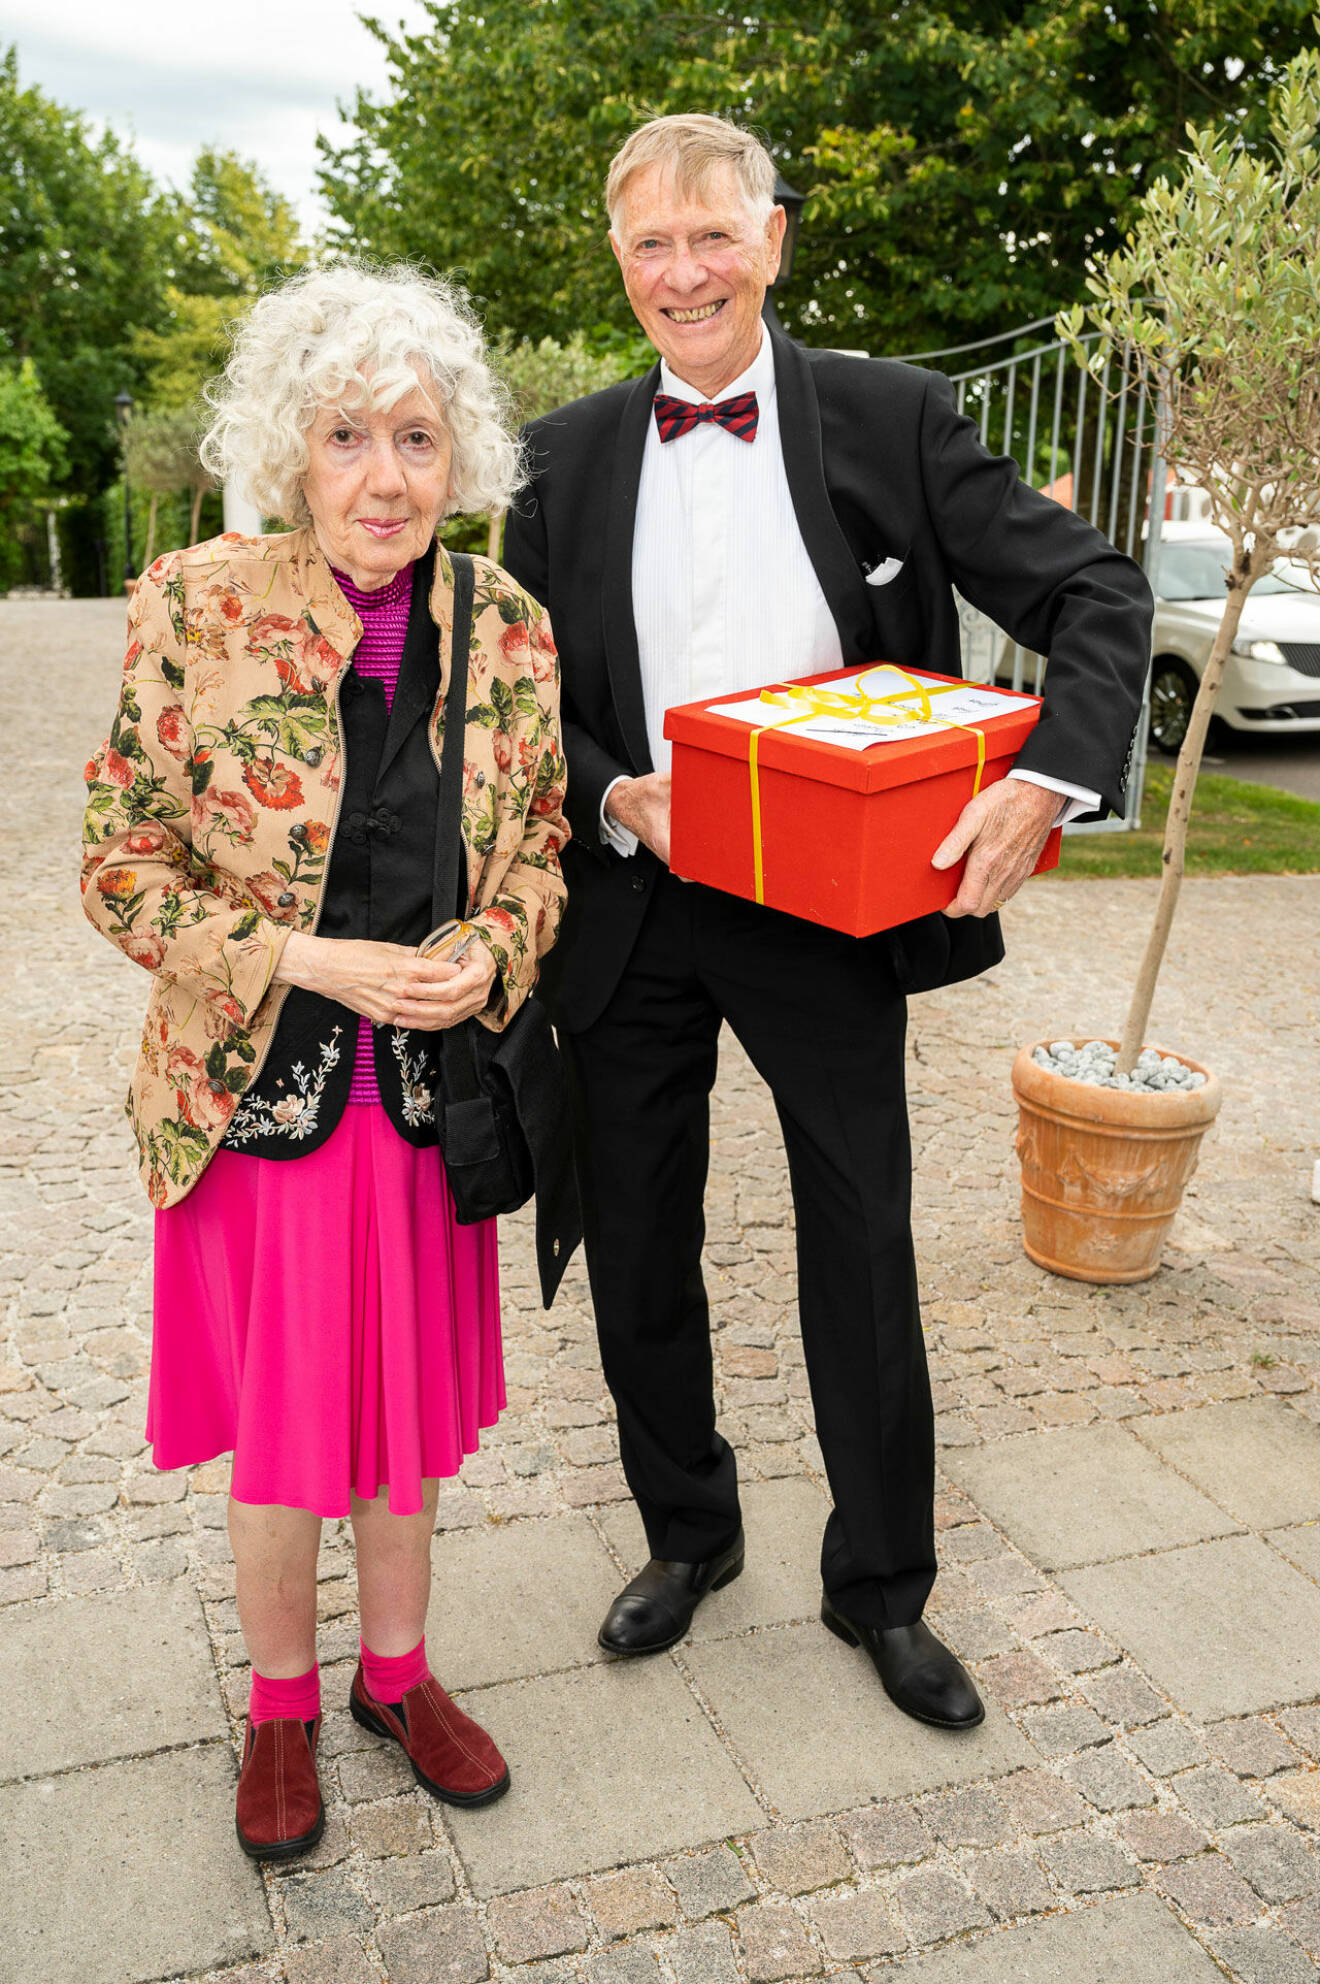 Anders Jarlskogs föräldrar Cecilia och Göran Jarlskog kom med spännande presentbox.